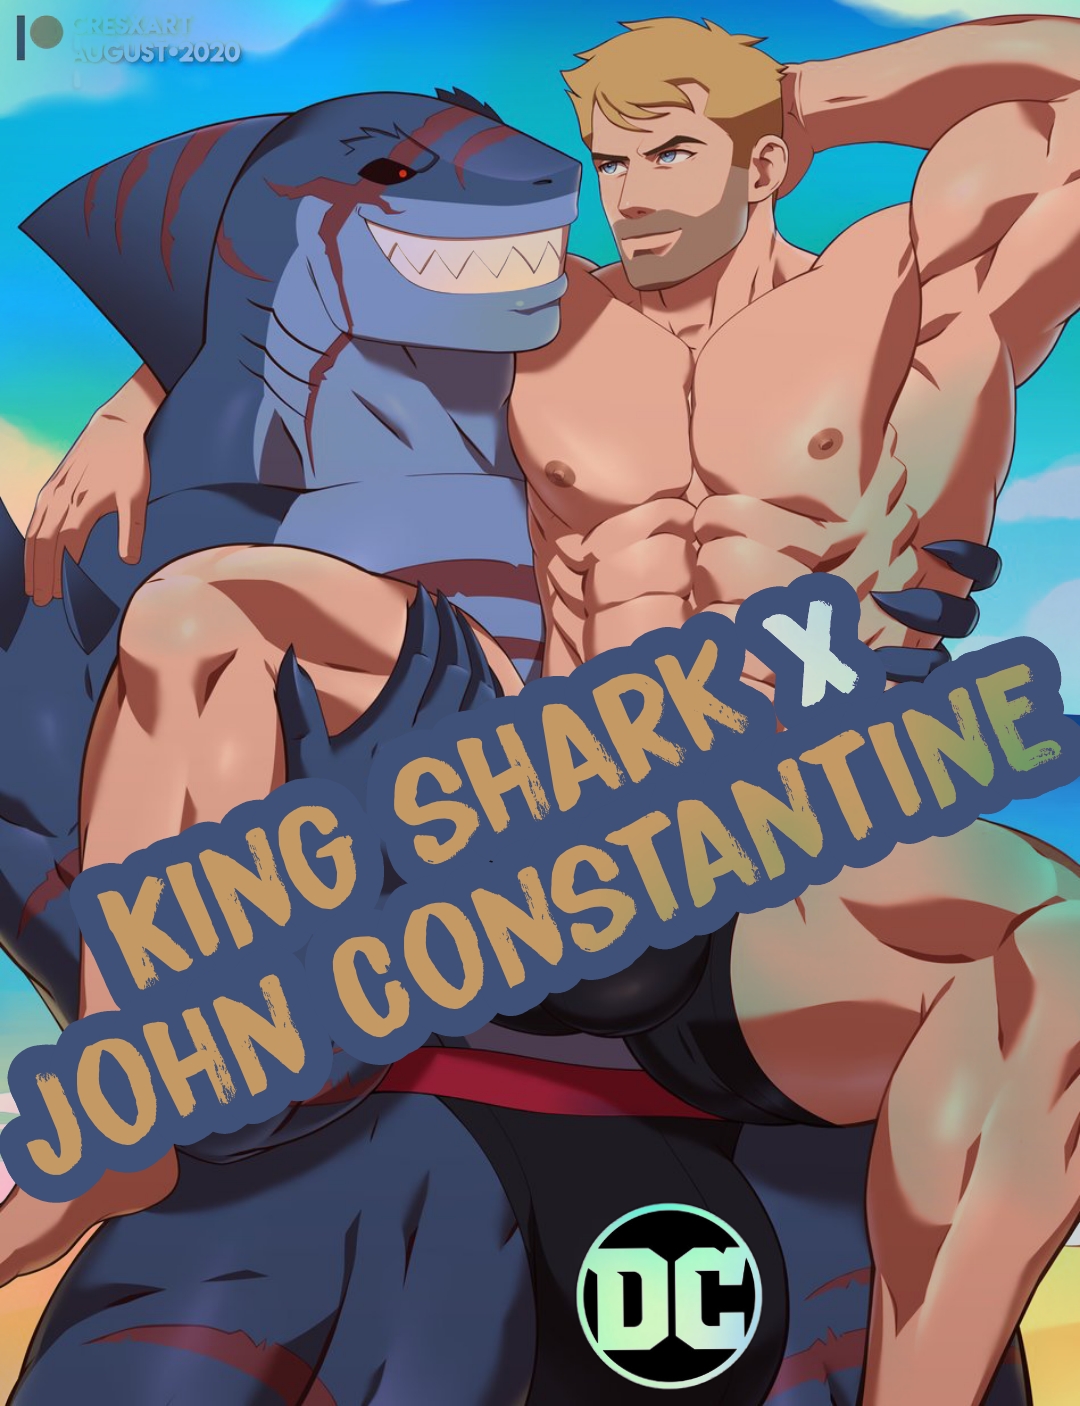 [wolf con f] Câu chuyện bên lề - King shark x John Constantine (RONALD) - Trang 1